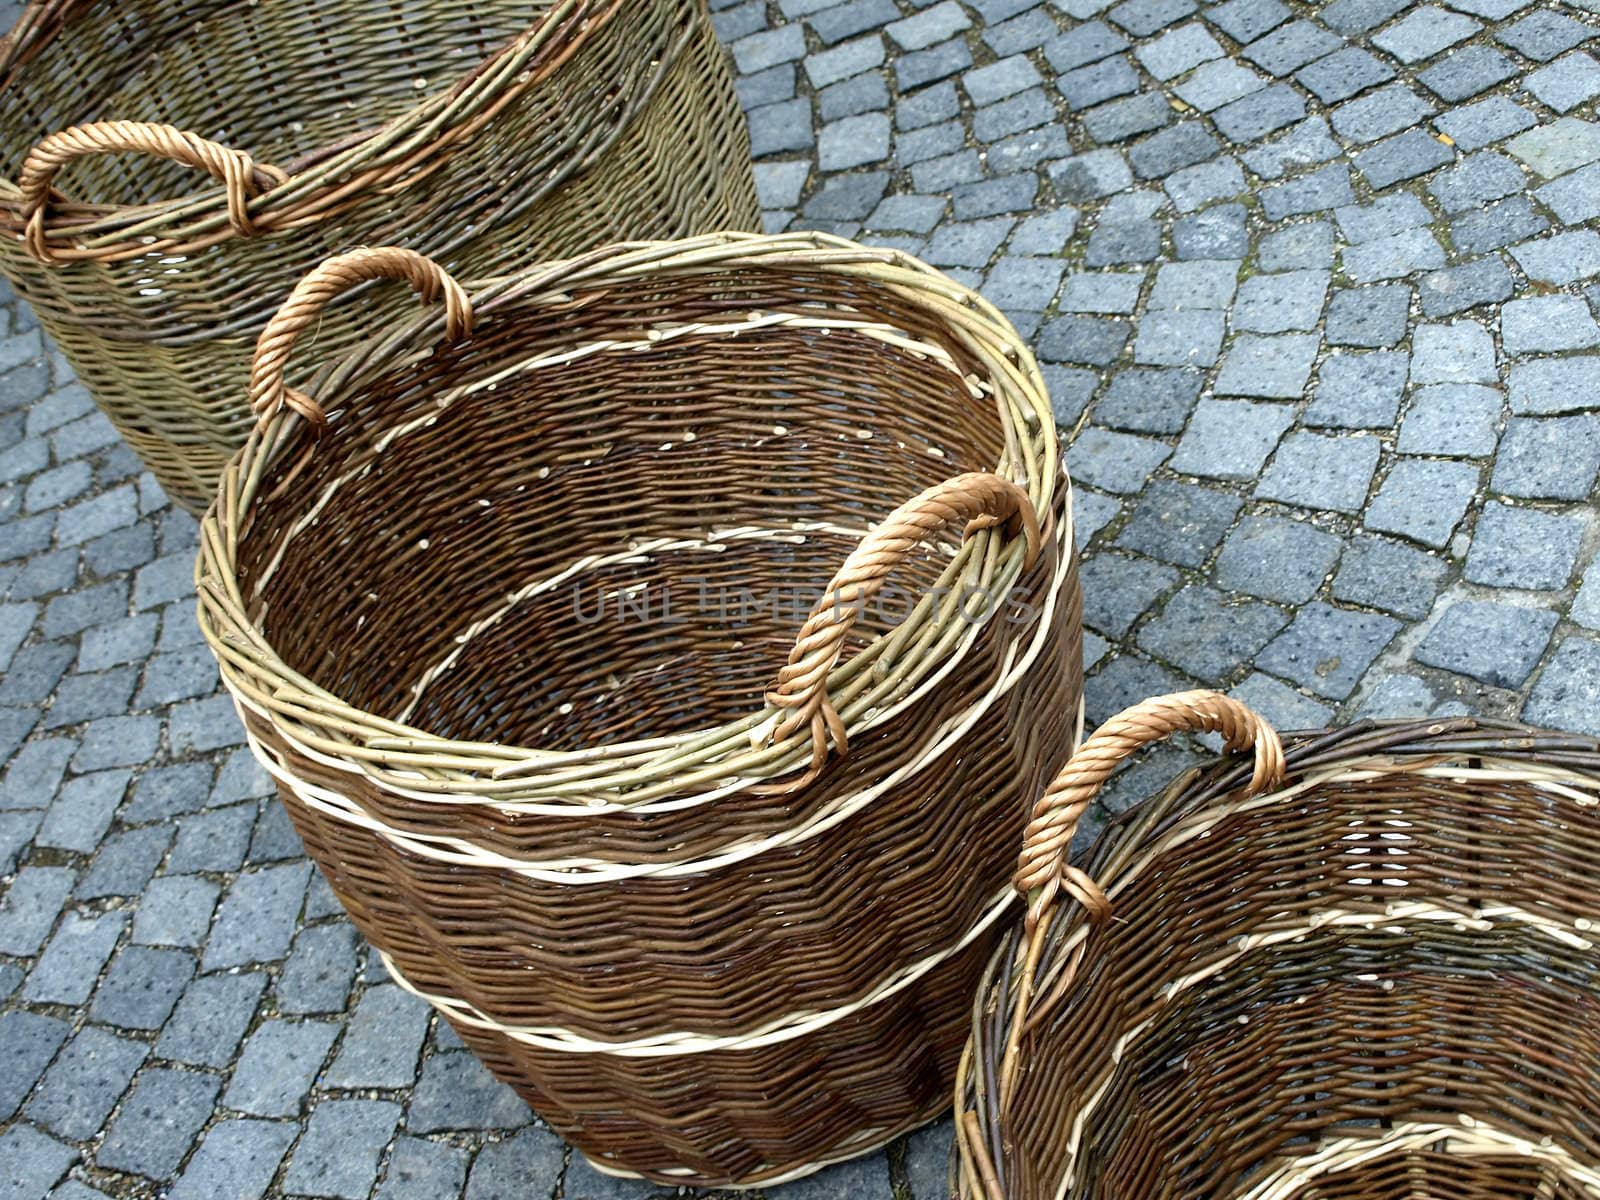 willow baskets by Jochen